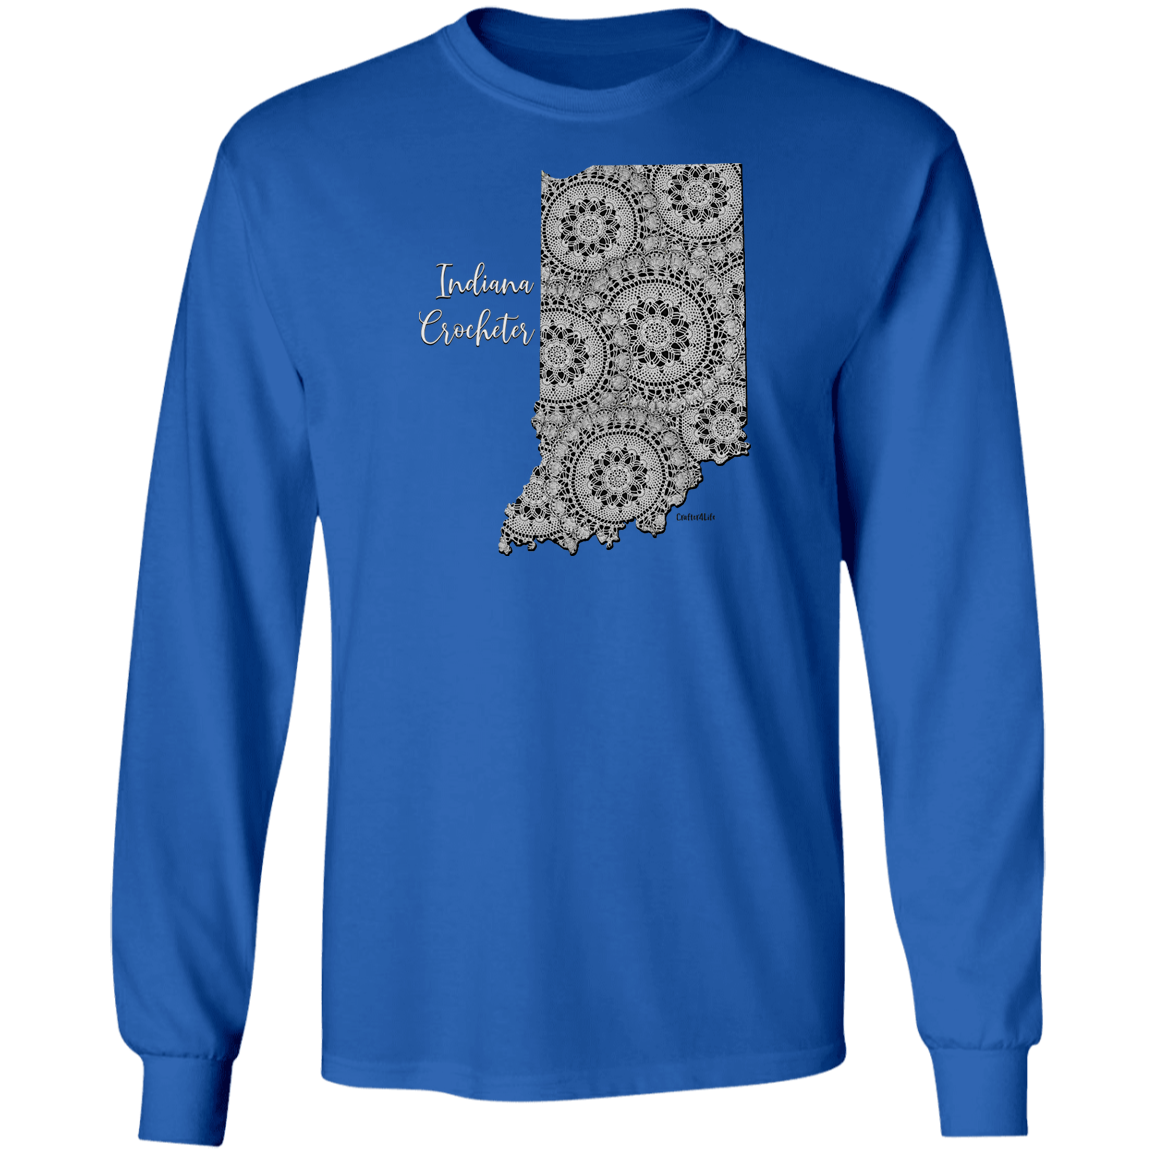 Indiana Crocheter LS Ultra Cotton T-Shirt